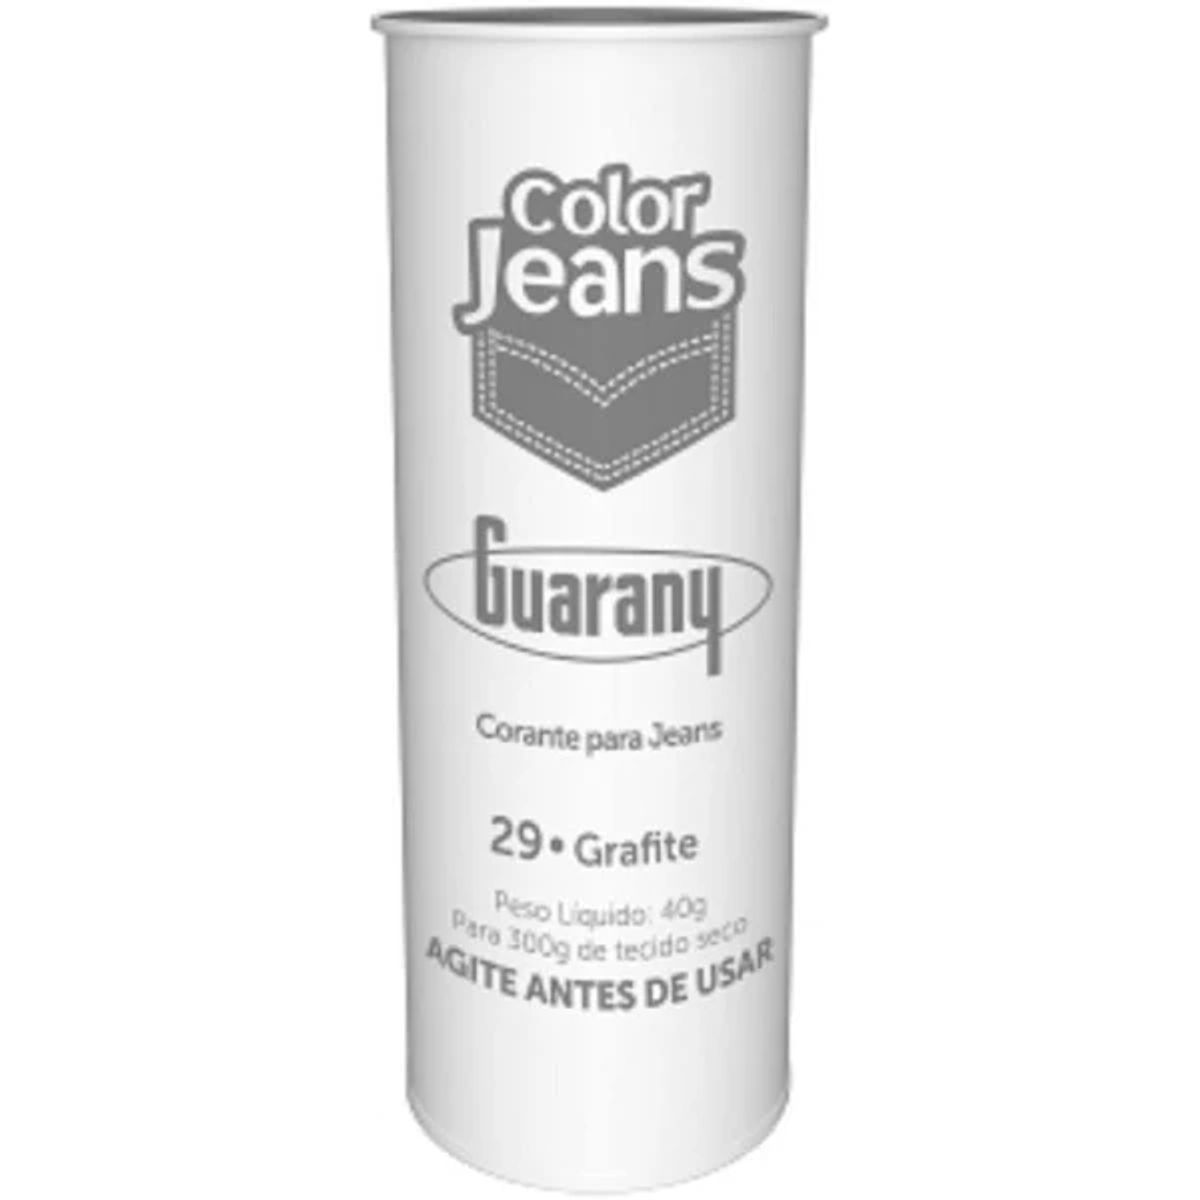 Corante Color Jeans Guarany Grafite 40g